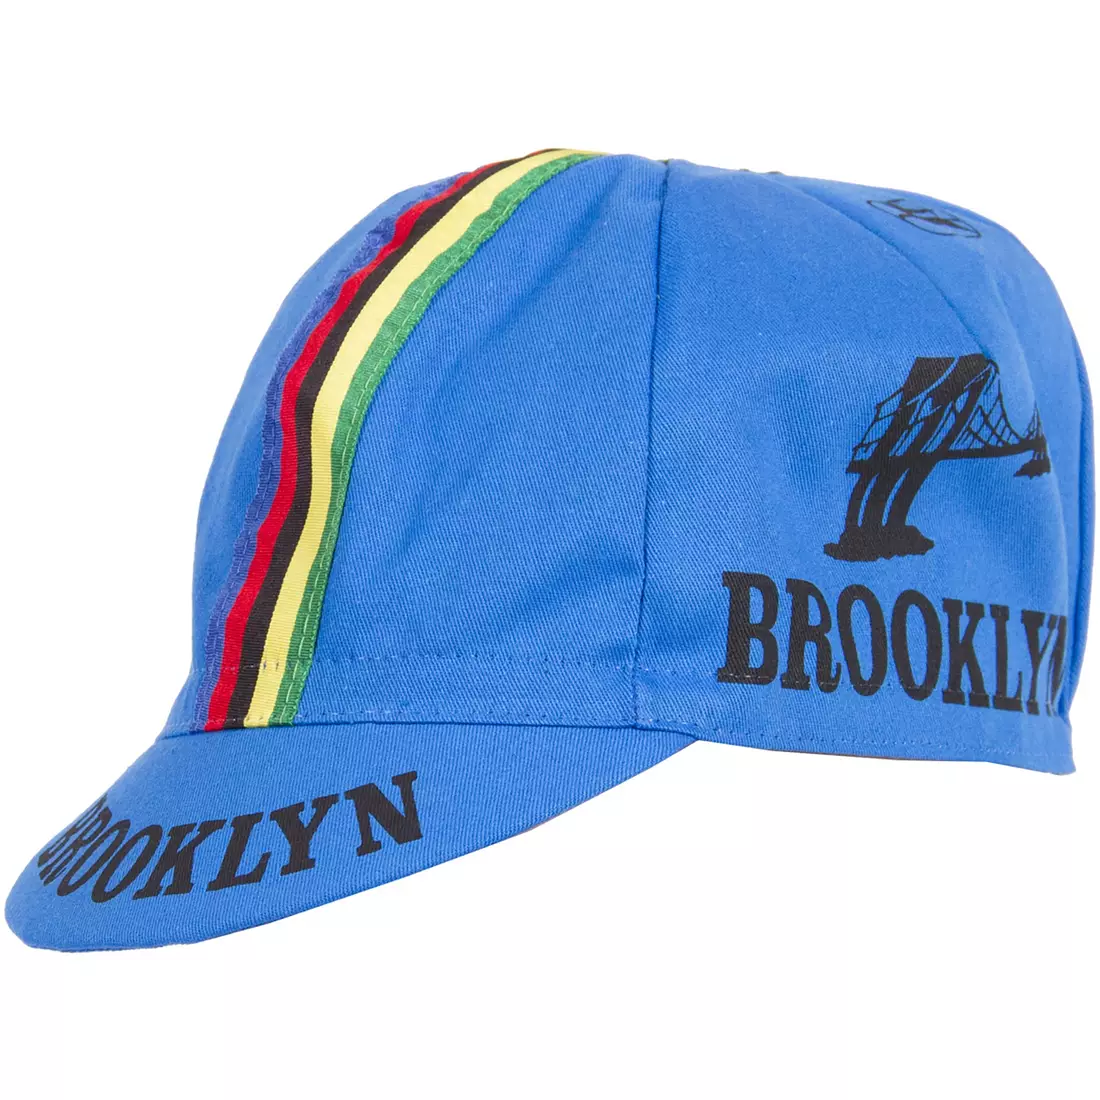 GIORDANA SS18 kerékpáros sapka - Brooklyn - Azzurro Blue csíkos szalaggal GI-S6-COCA-BROK-AZZU egy méret